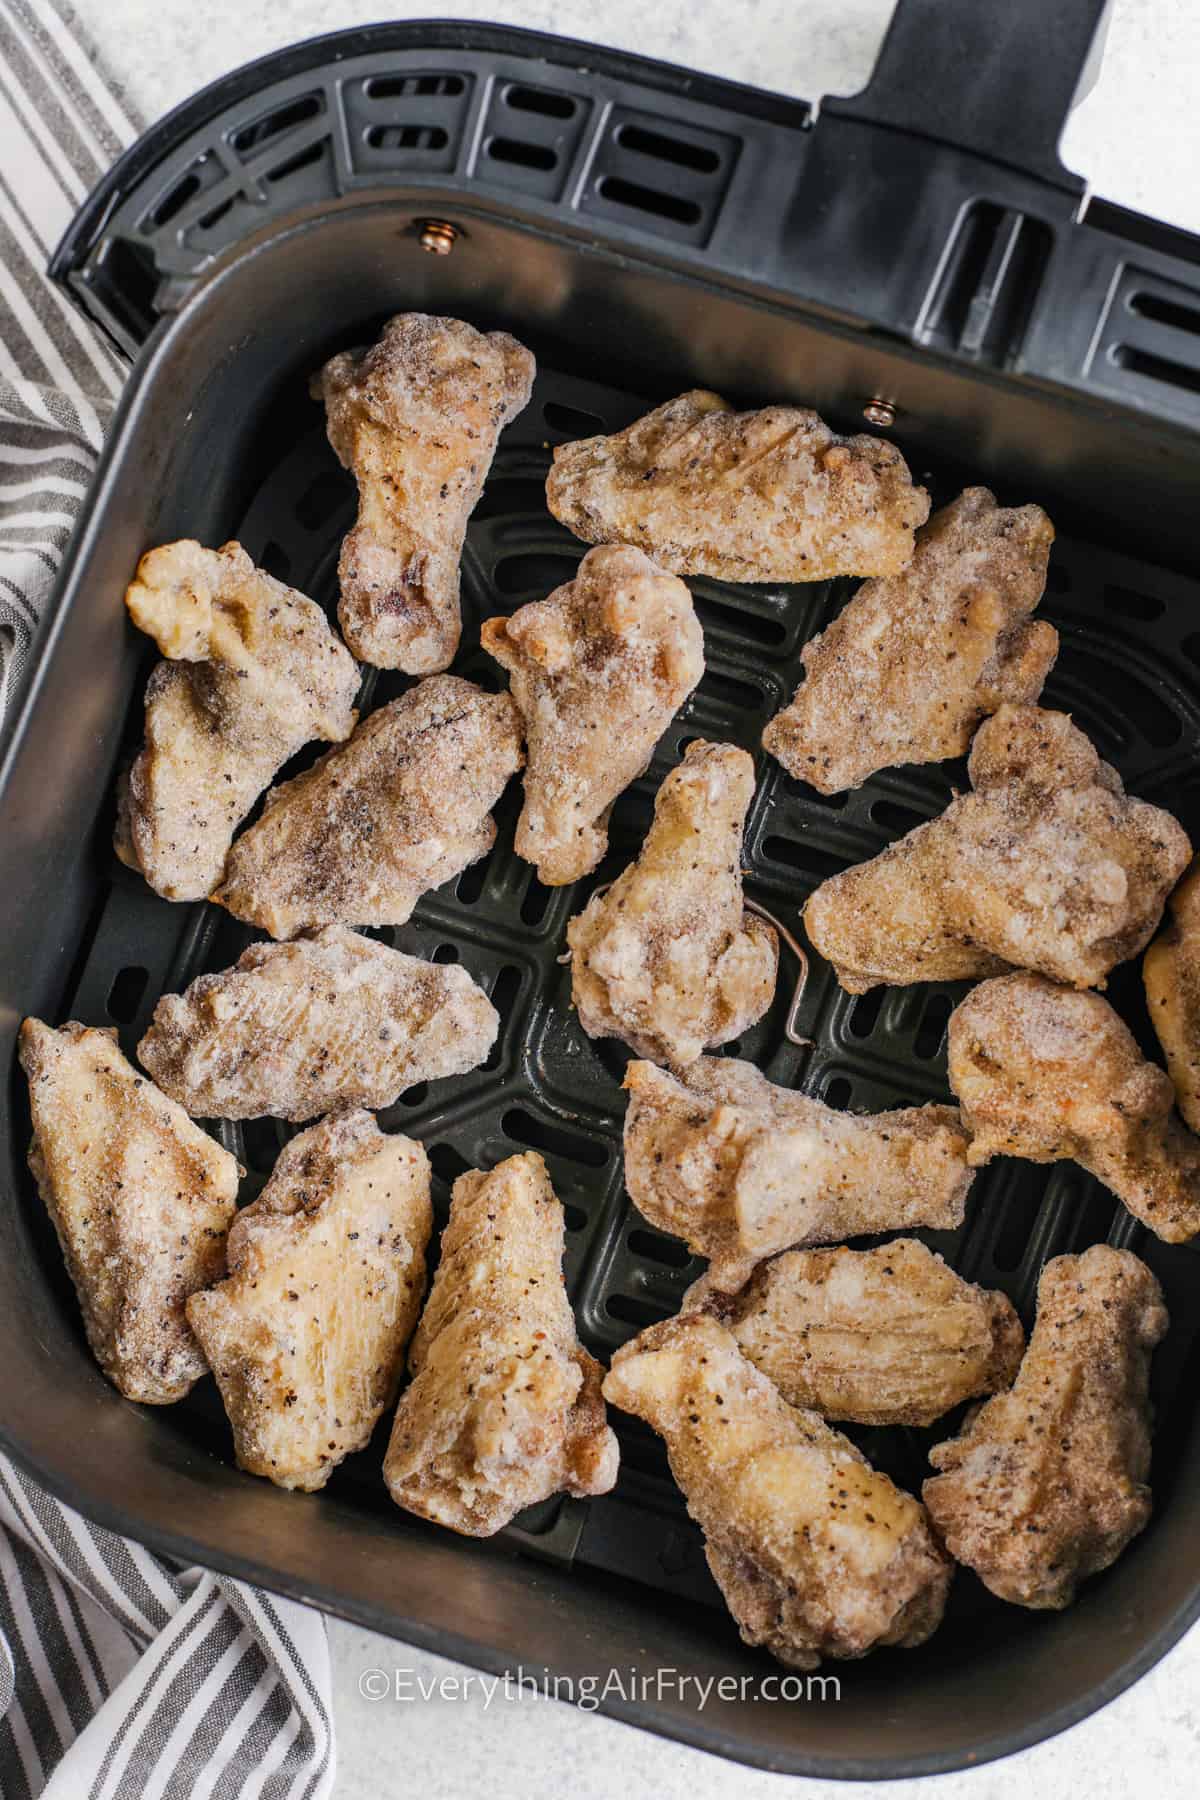 frozen chicken wings in an air fryer basket